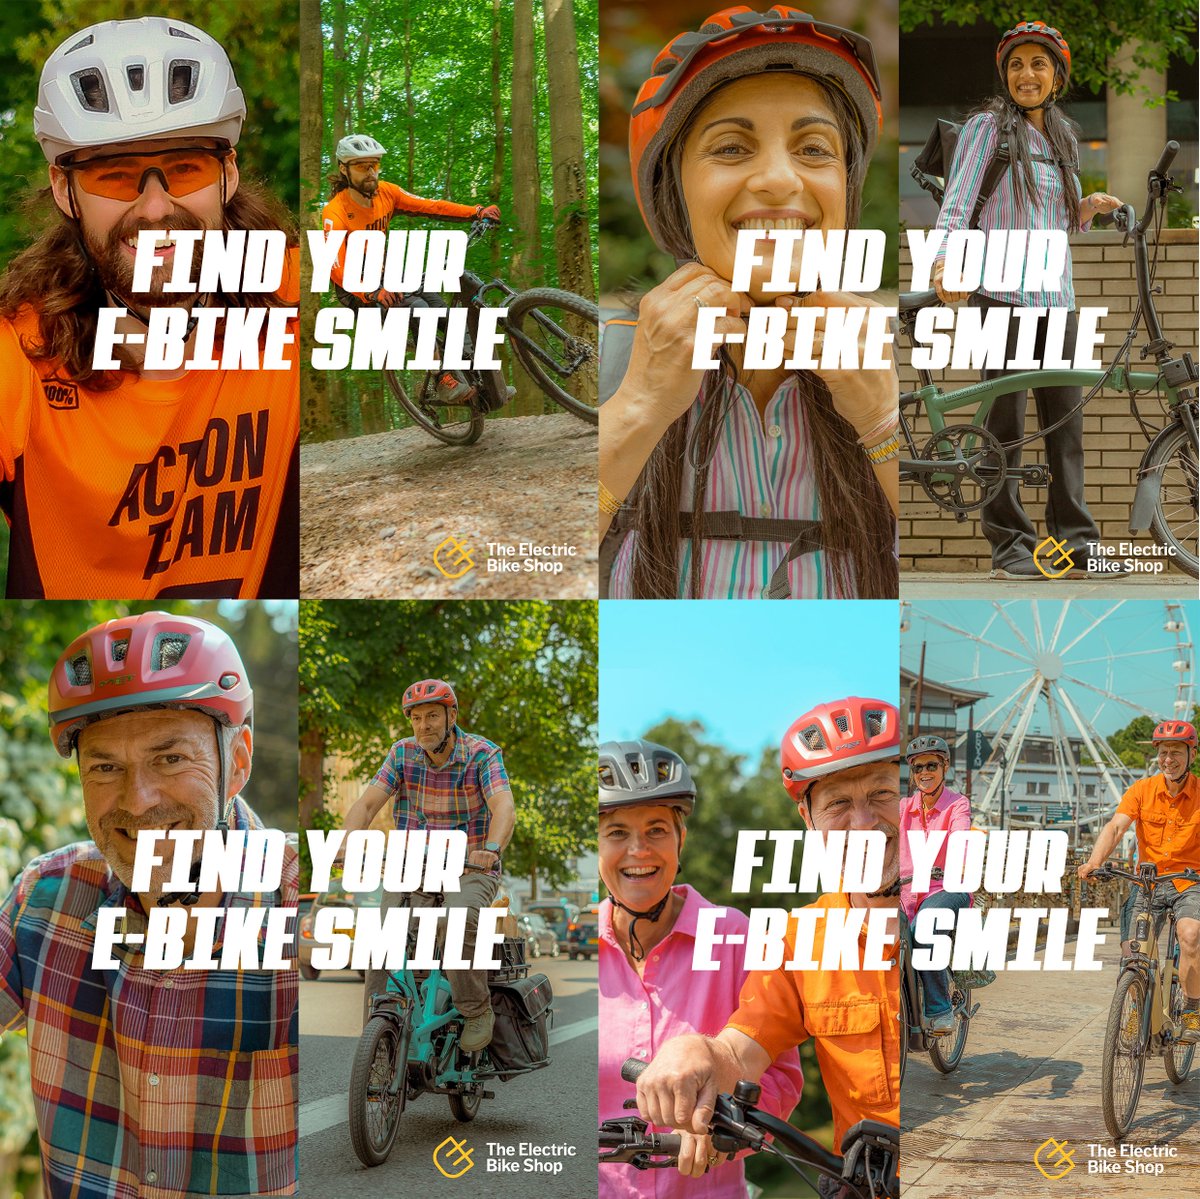 Say cheese! 😄 This summer, find your e-bike smile at The Electric Bike Shop! ⚡ Find your e-bike smile now. 😊bit.ly/FindYourE-Bike… #ebike #bike #cycling #cyclinguk #ebikesmile #tebs #theelectricbikeshop #explore #ebikelife #bikeshop #cargobike #mtb #commute #greentravel